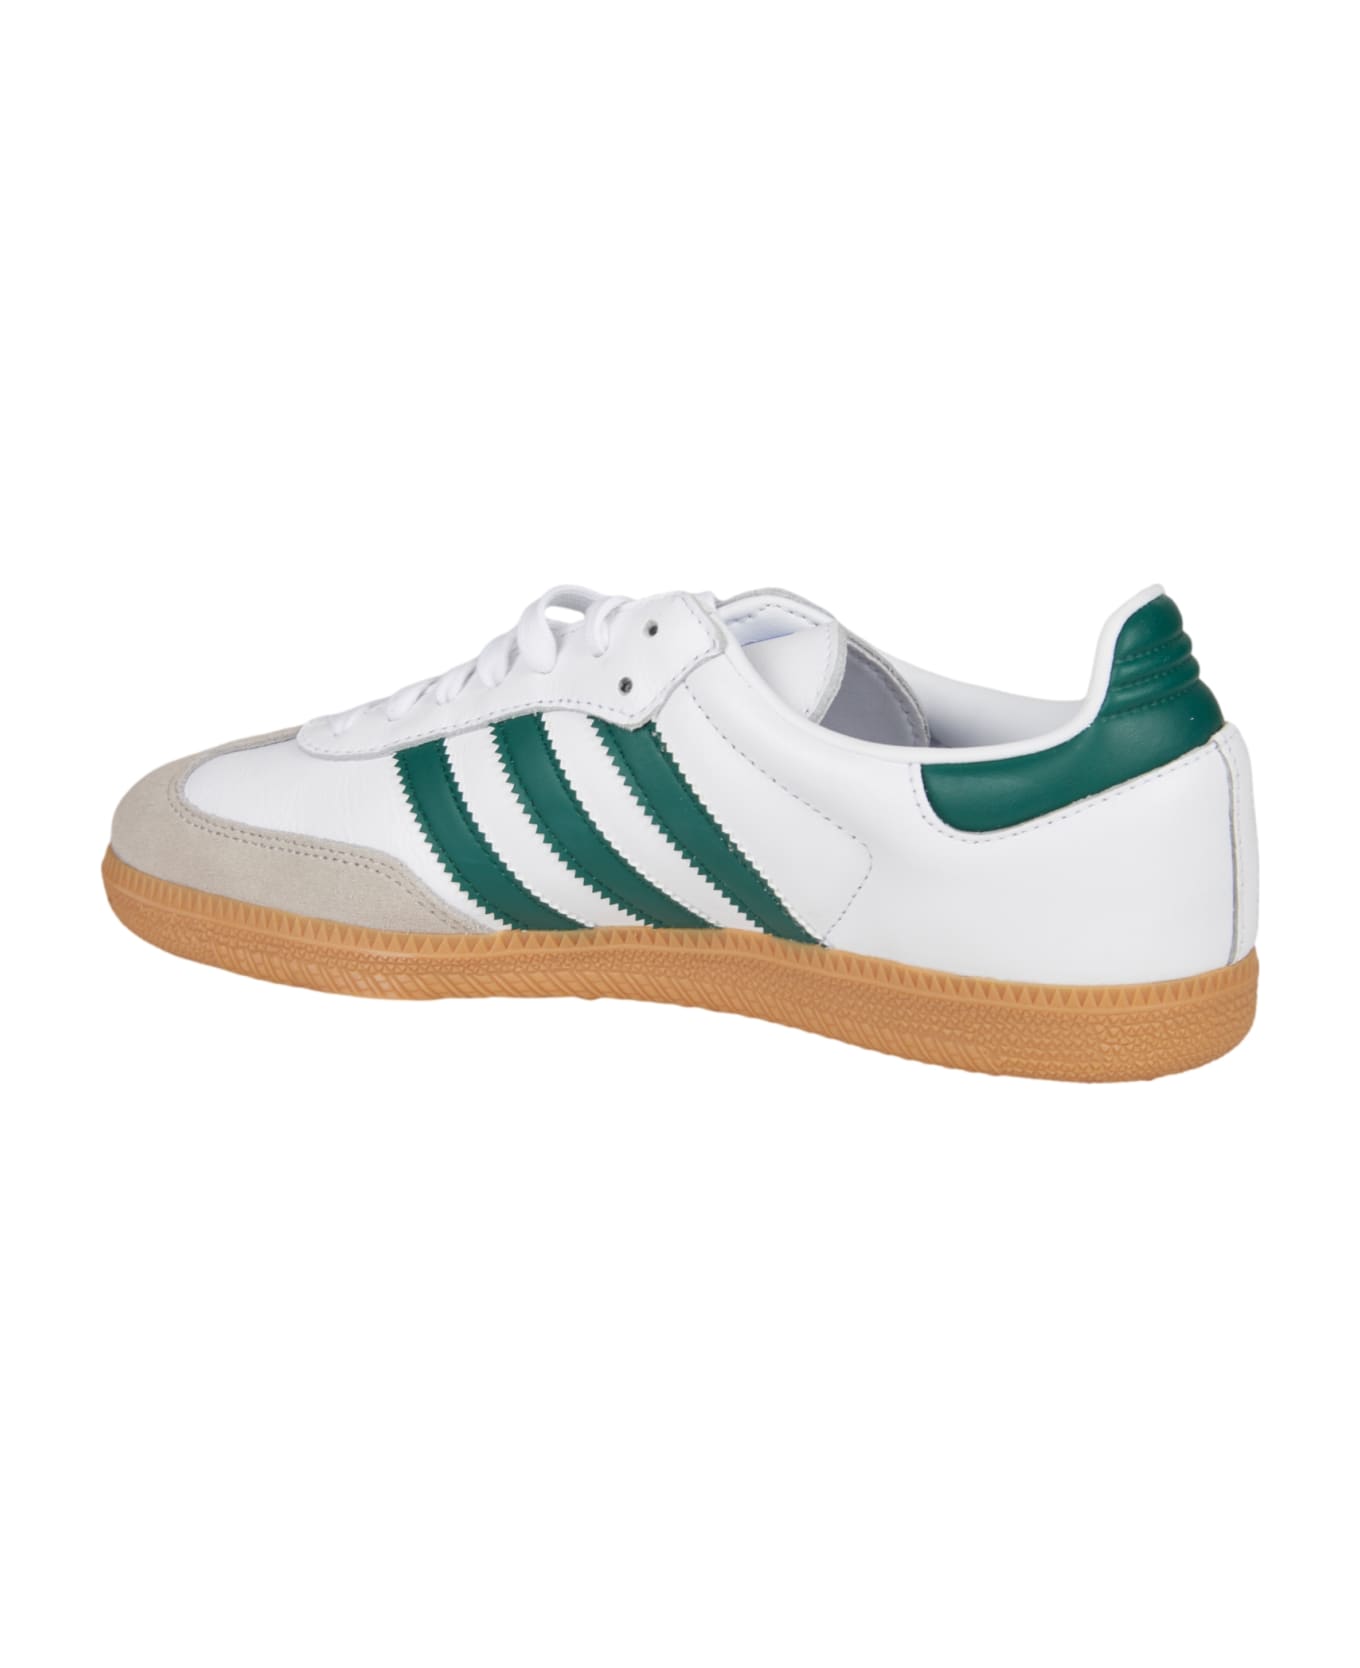 Adidas Samba Og Sneakers - White/Green スニーカー